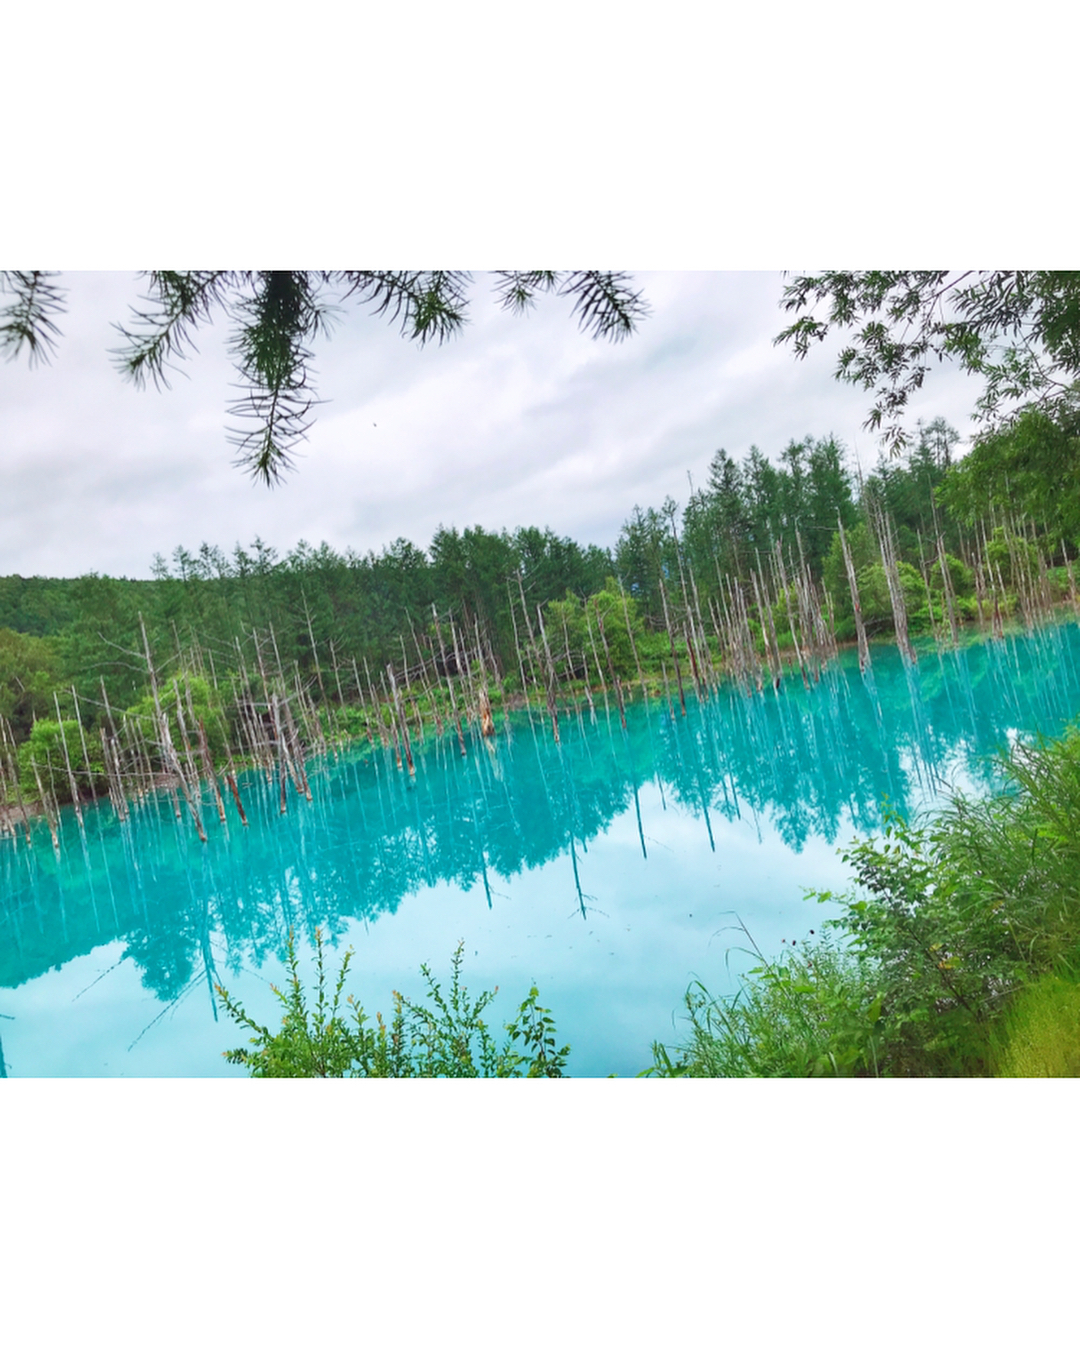 伊藤奈月 青い池 ほんとうに 綺麗な ターコイズブルー色だった 北海道 北海道旅行 札幌 札幌観光 札幌グルメ 札幌旅行 夏旅行 Moe Zine